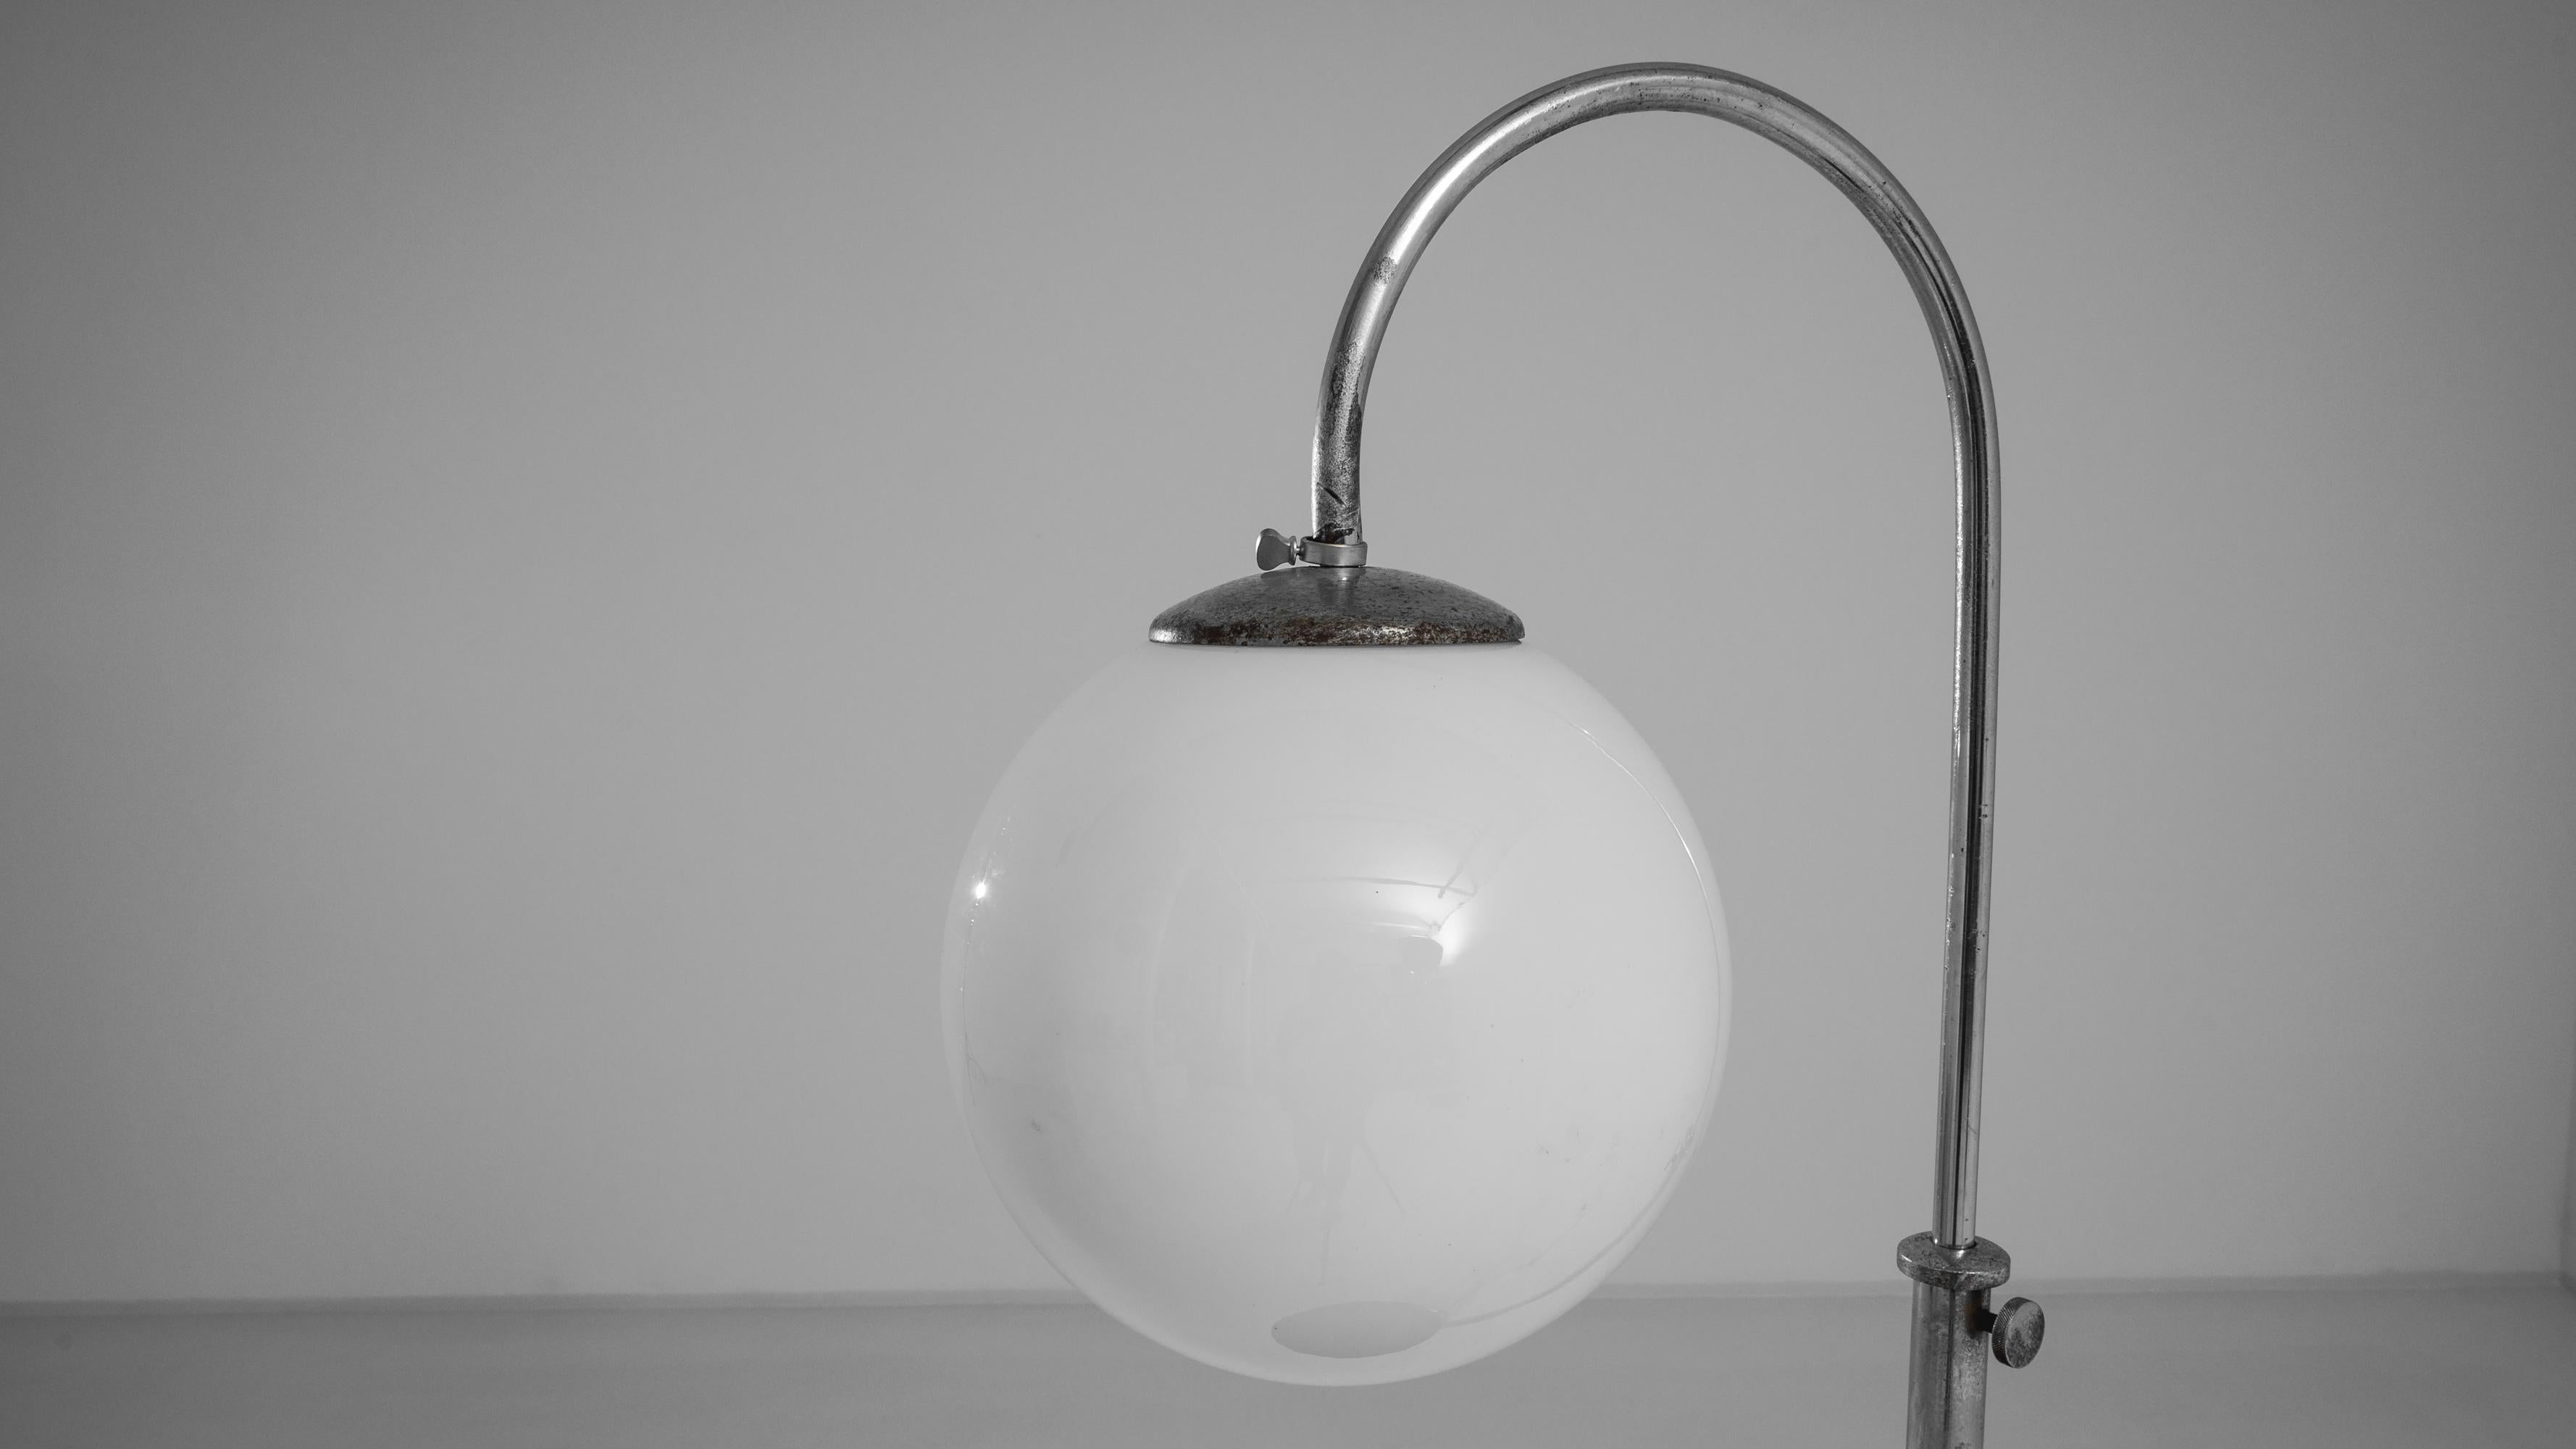 Beleuchten Sie Ihren Raum mit der zeitlosen Eleganz dieser tschechischen Metall-Stehlampe aus den 1930er Jahren, entworfen von J. Halabala. Diese modernistische Stehleuchte verbindet Form und Funktion nahtlos miteinander. Sie besteht aus einem